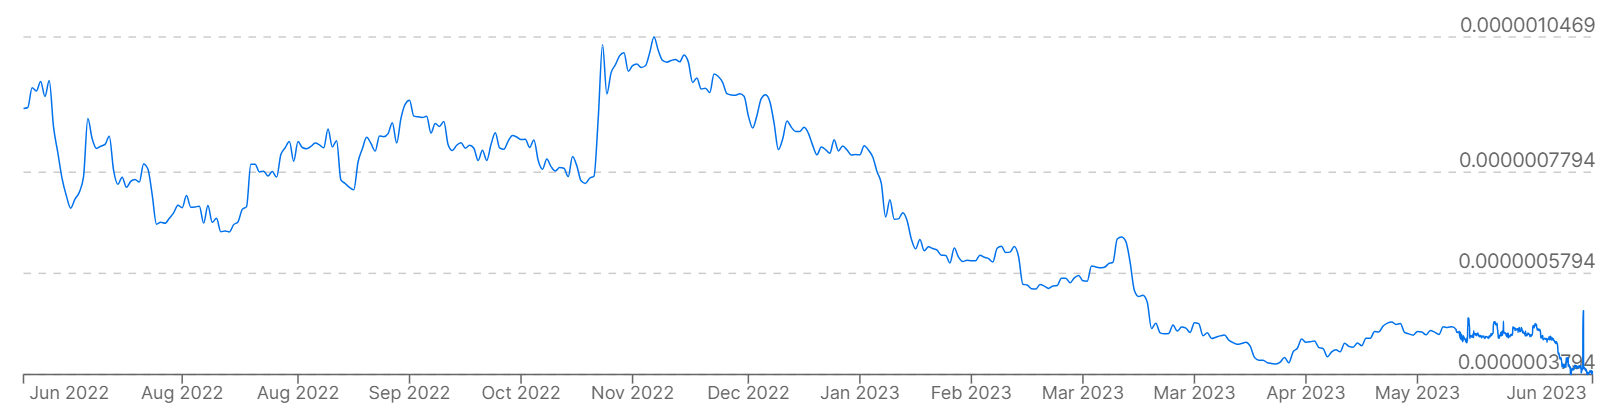 Un gráfico que muestra los precios de Bitcoin frente al rublo ruso en los últimos 12 meses.